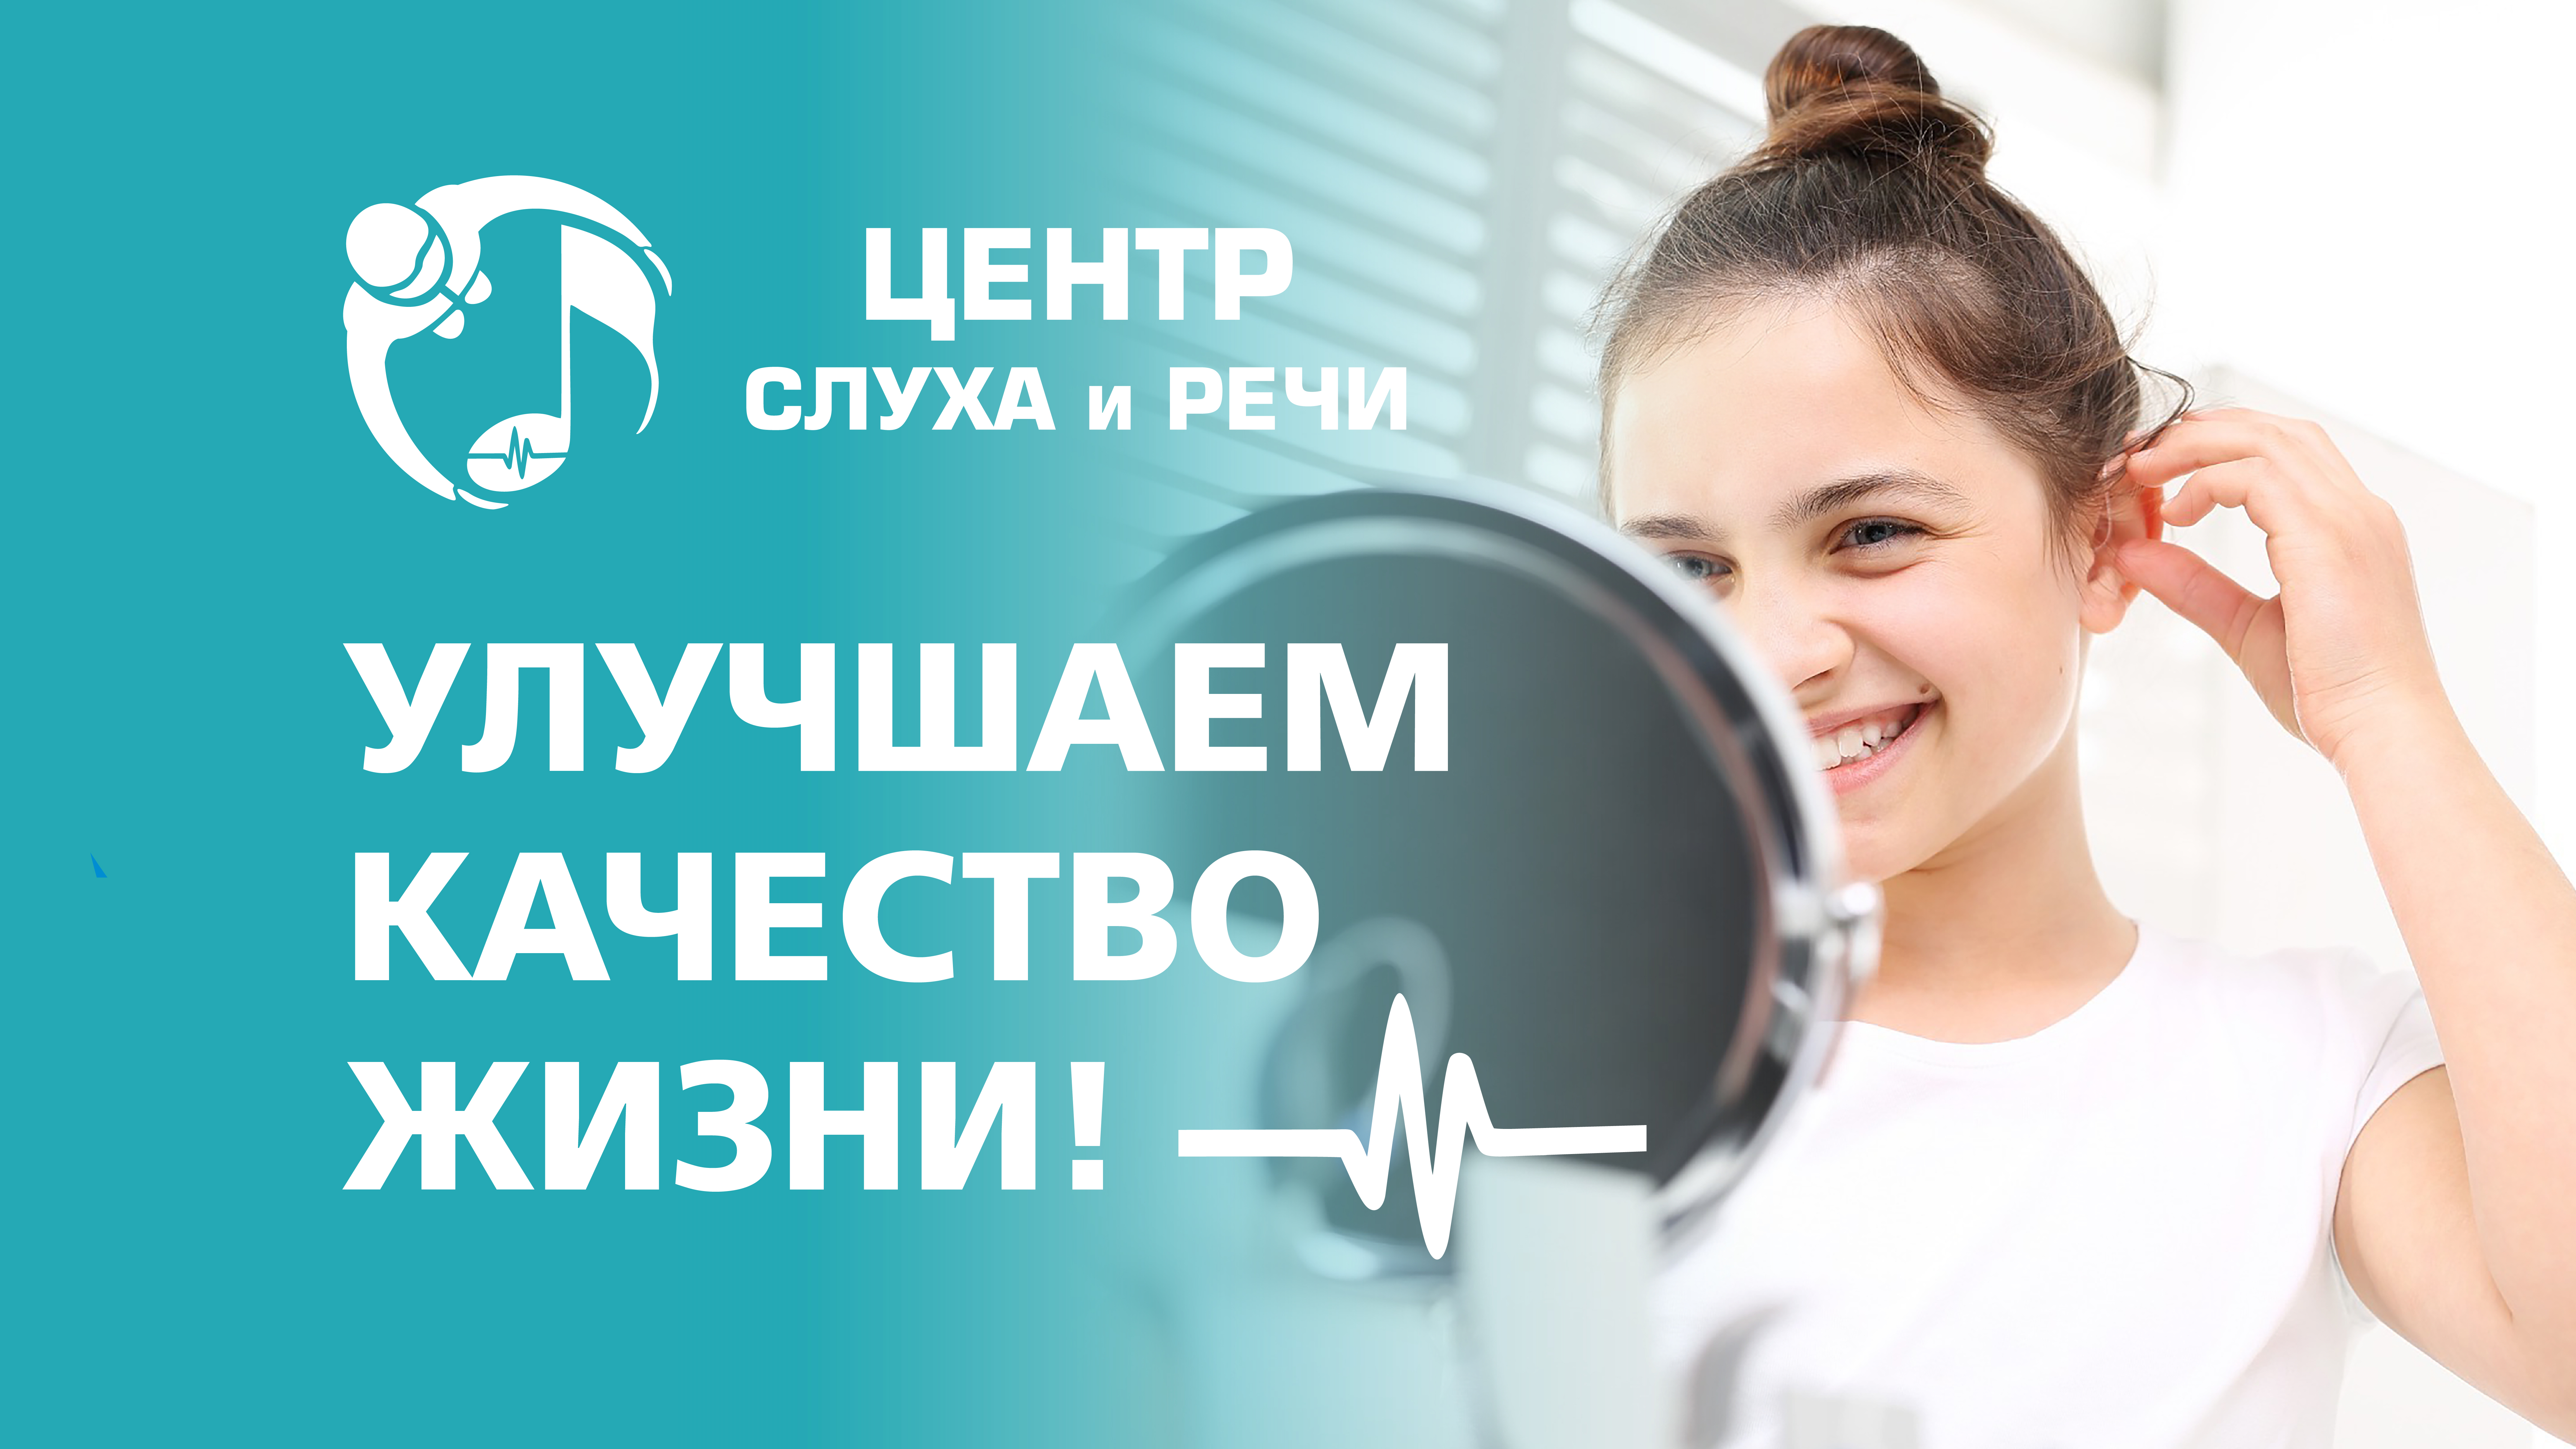 «Центр слуха и речи»: Улучшаем качество жизни!